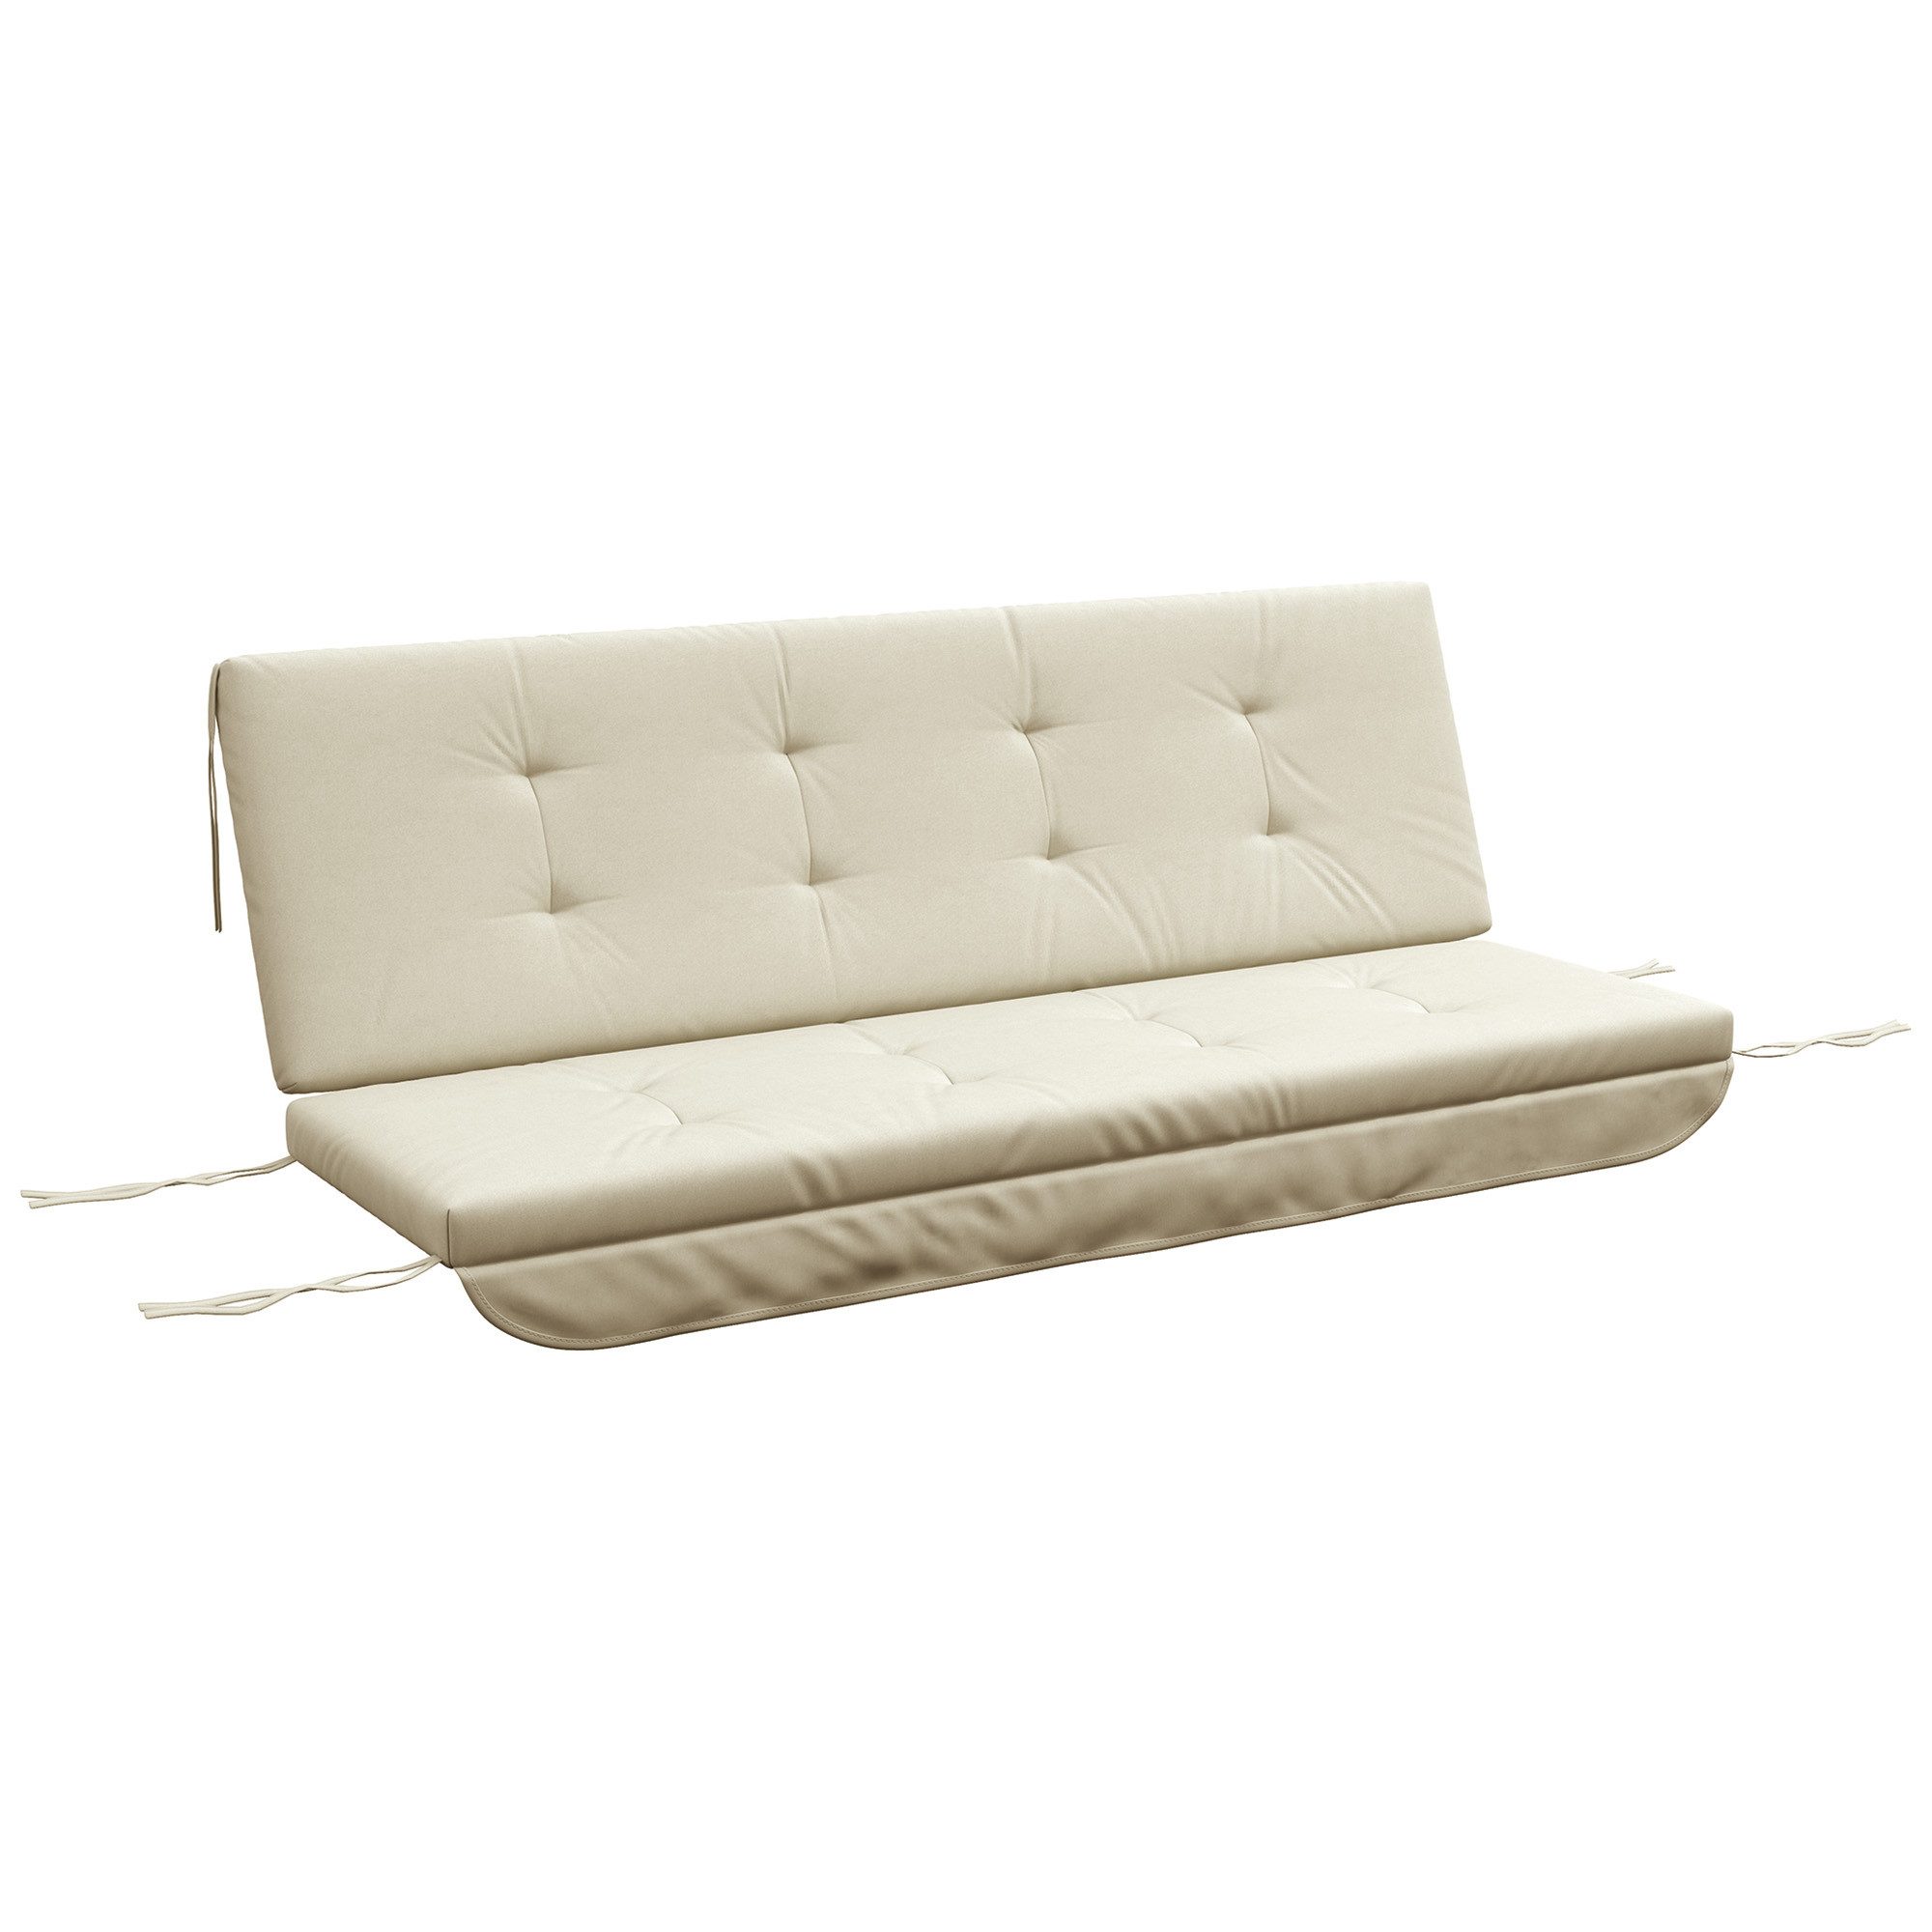 Outsunny Sitzkissen Auflagen-Set für Hollywoodschaukel Gartenpolster, Beige 170cm x 100cm x 8cm